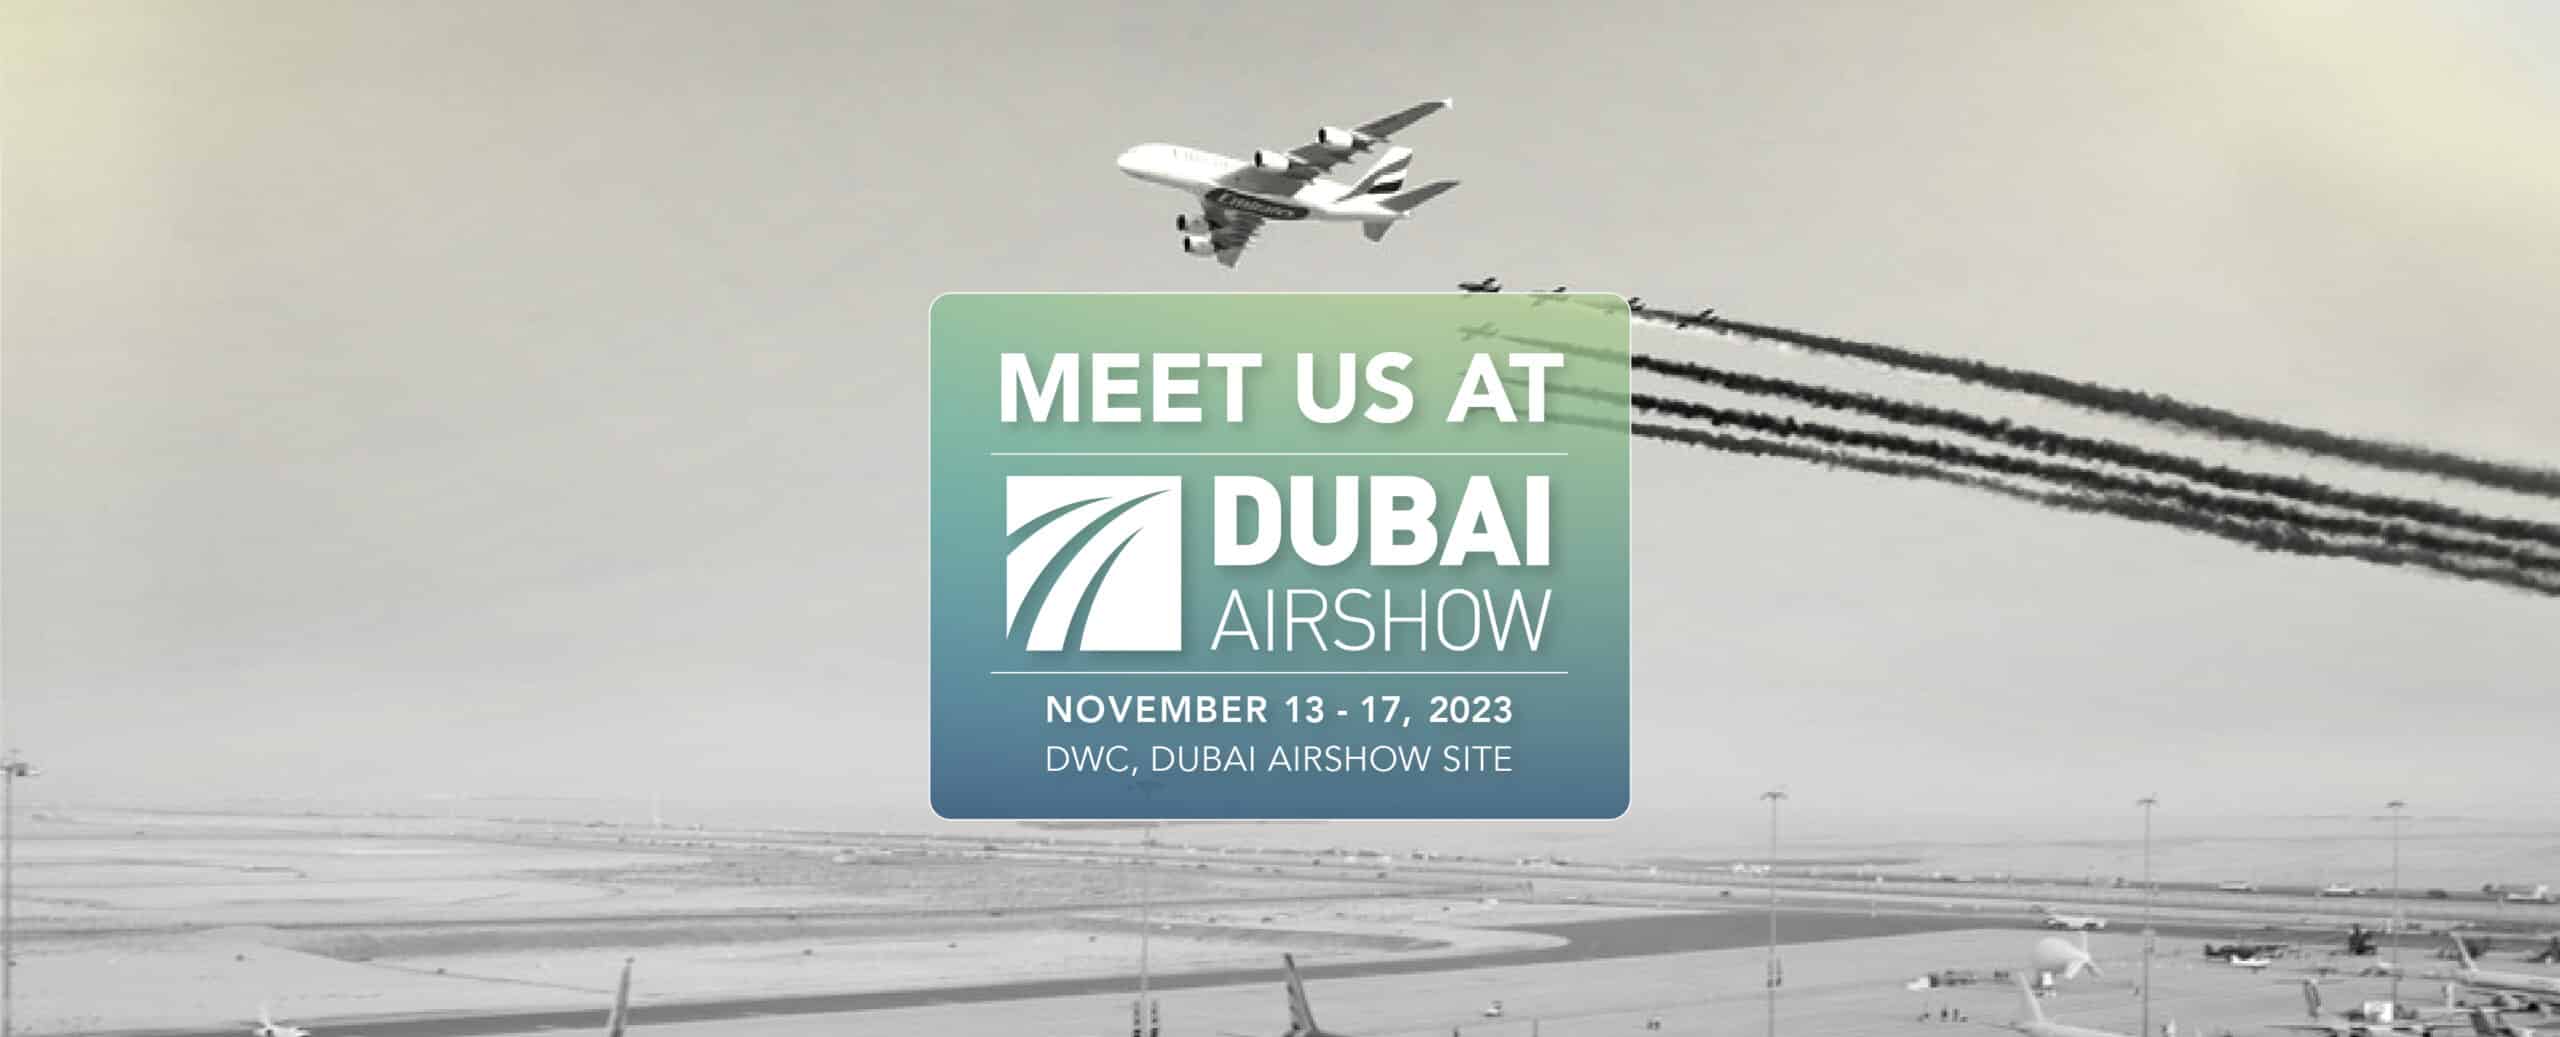 Dubai Airshow 23 Banner Scaled